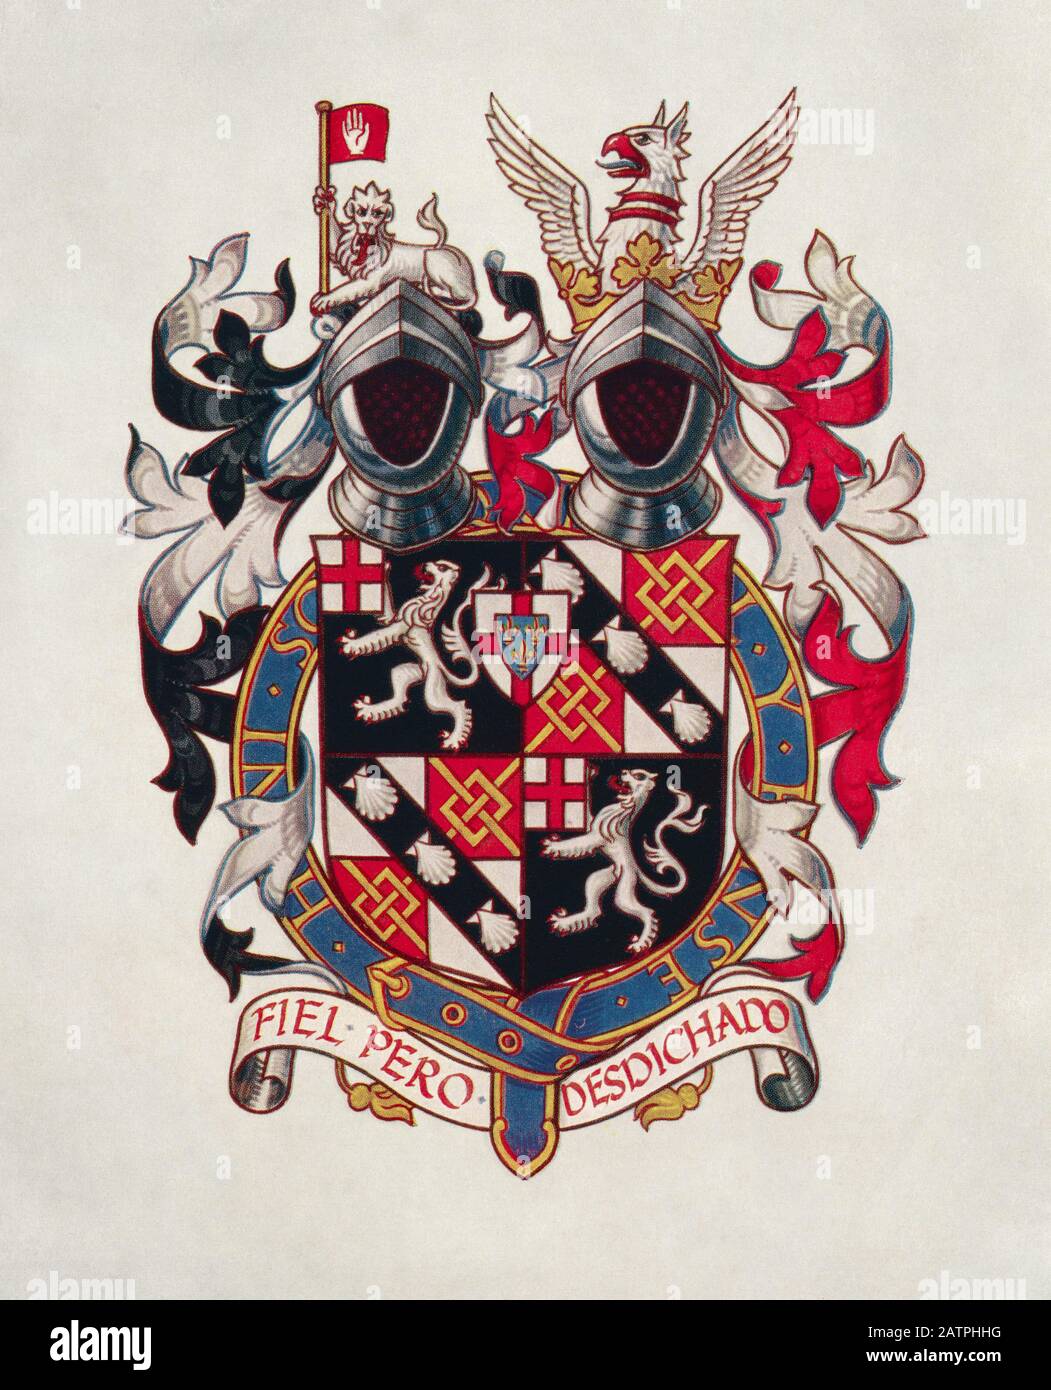 Das Wappen von Sir Winston Churchill. Sir Winston Leonards Spencer-Churchill, * Zwischen 1874 Und 1965. Britischer Politiker, Armeeoffizier, Schriftsteller und zweimal Premierminister des Vereinigten Königreichs. Stockfoto